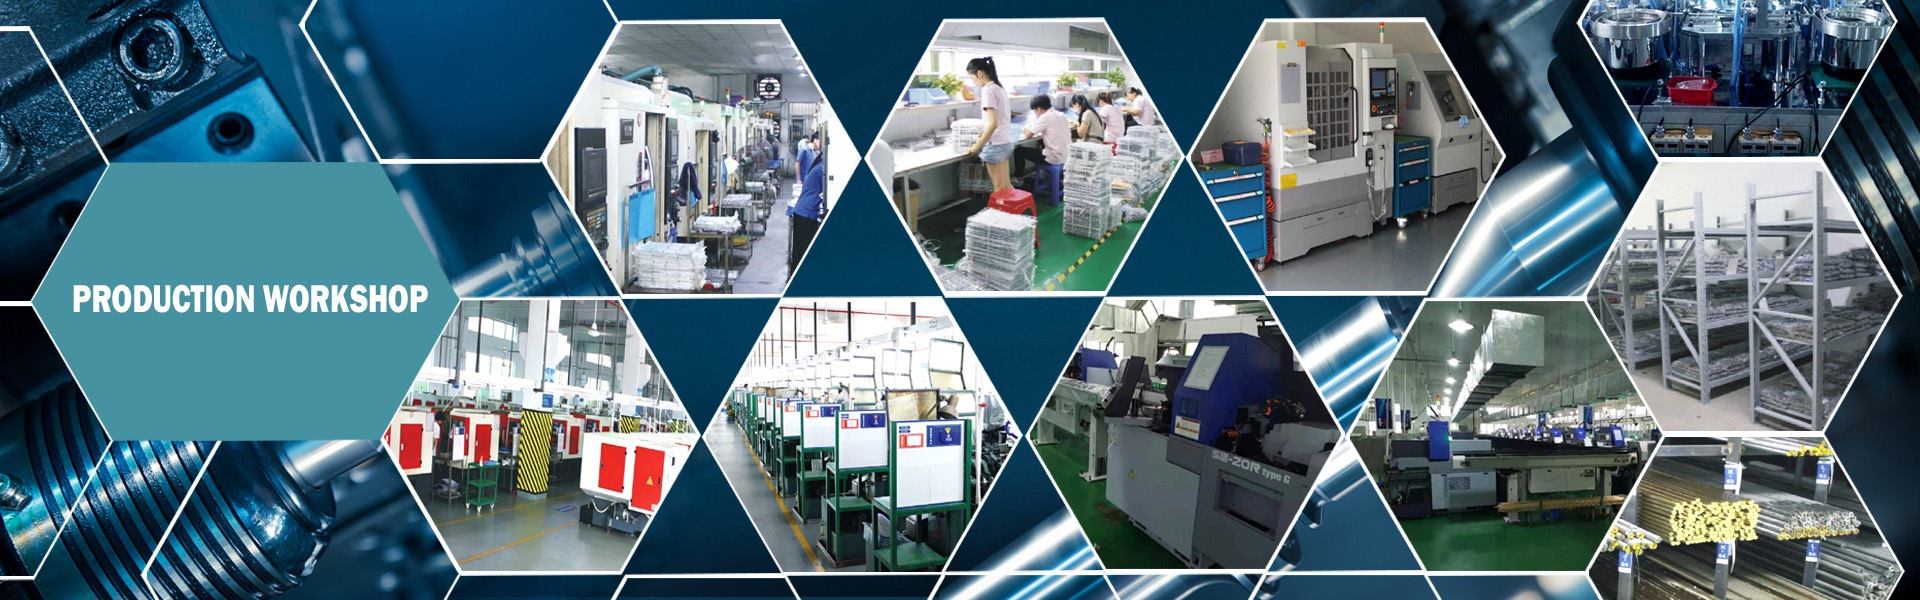 Прецизен хардуер, леене на сплав, оформяне на профила,Dongguan Xililai Precision Hardware Co.,Ltd.